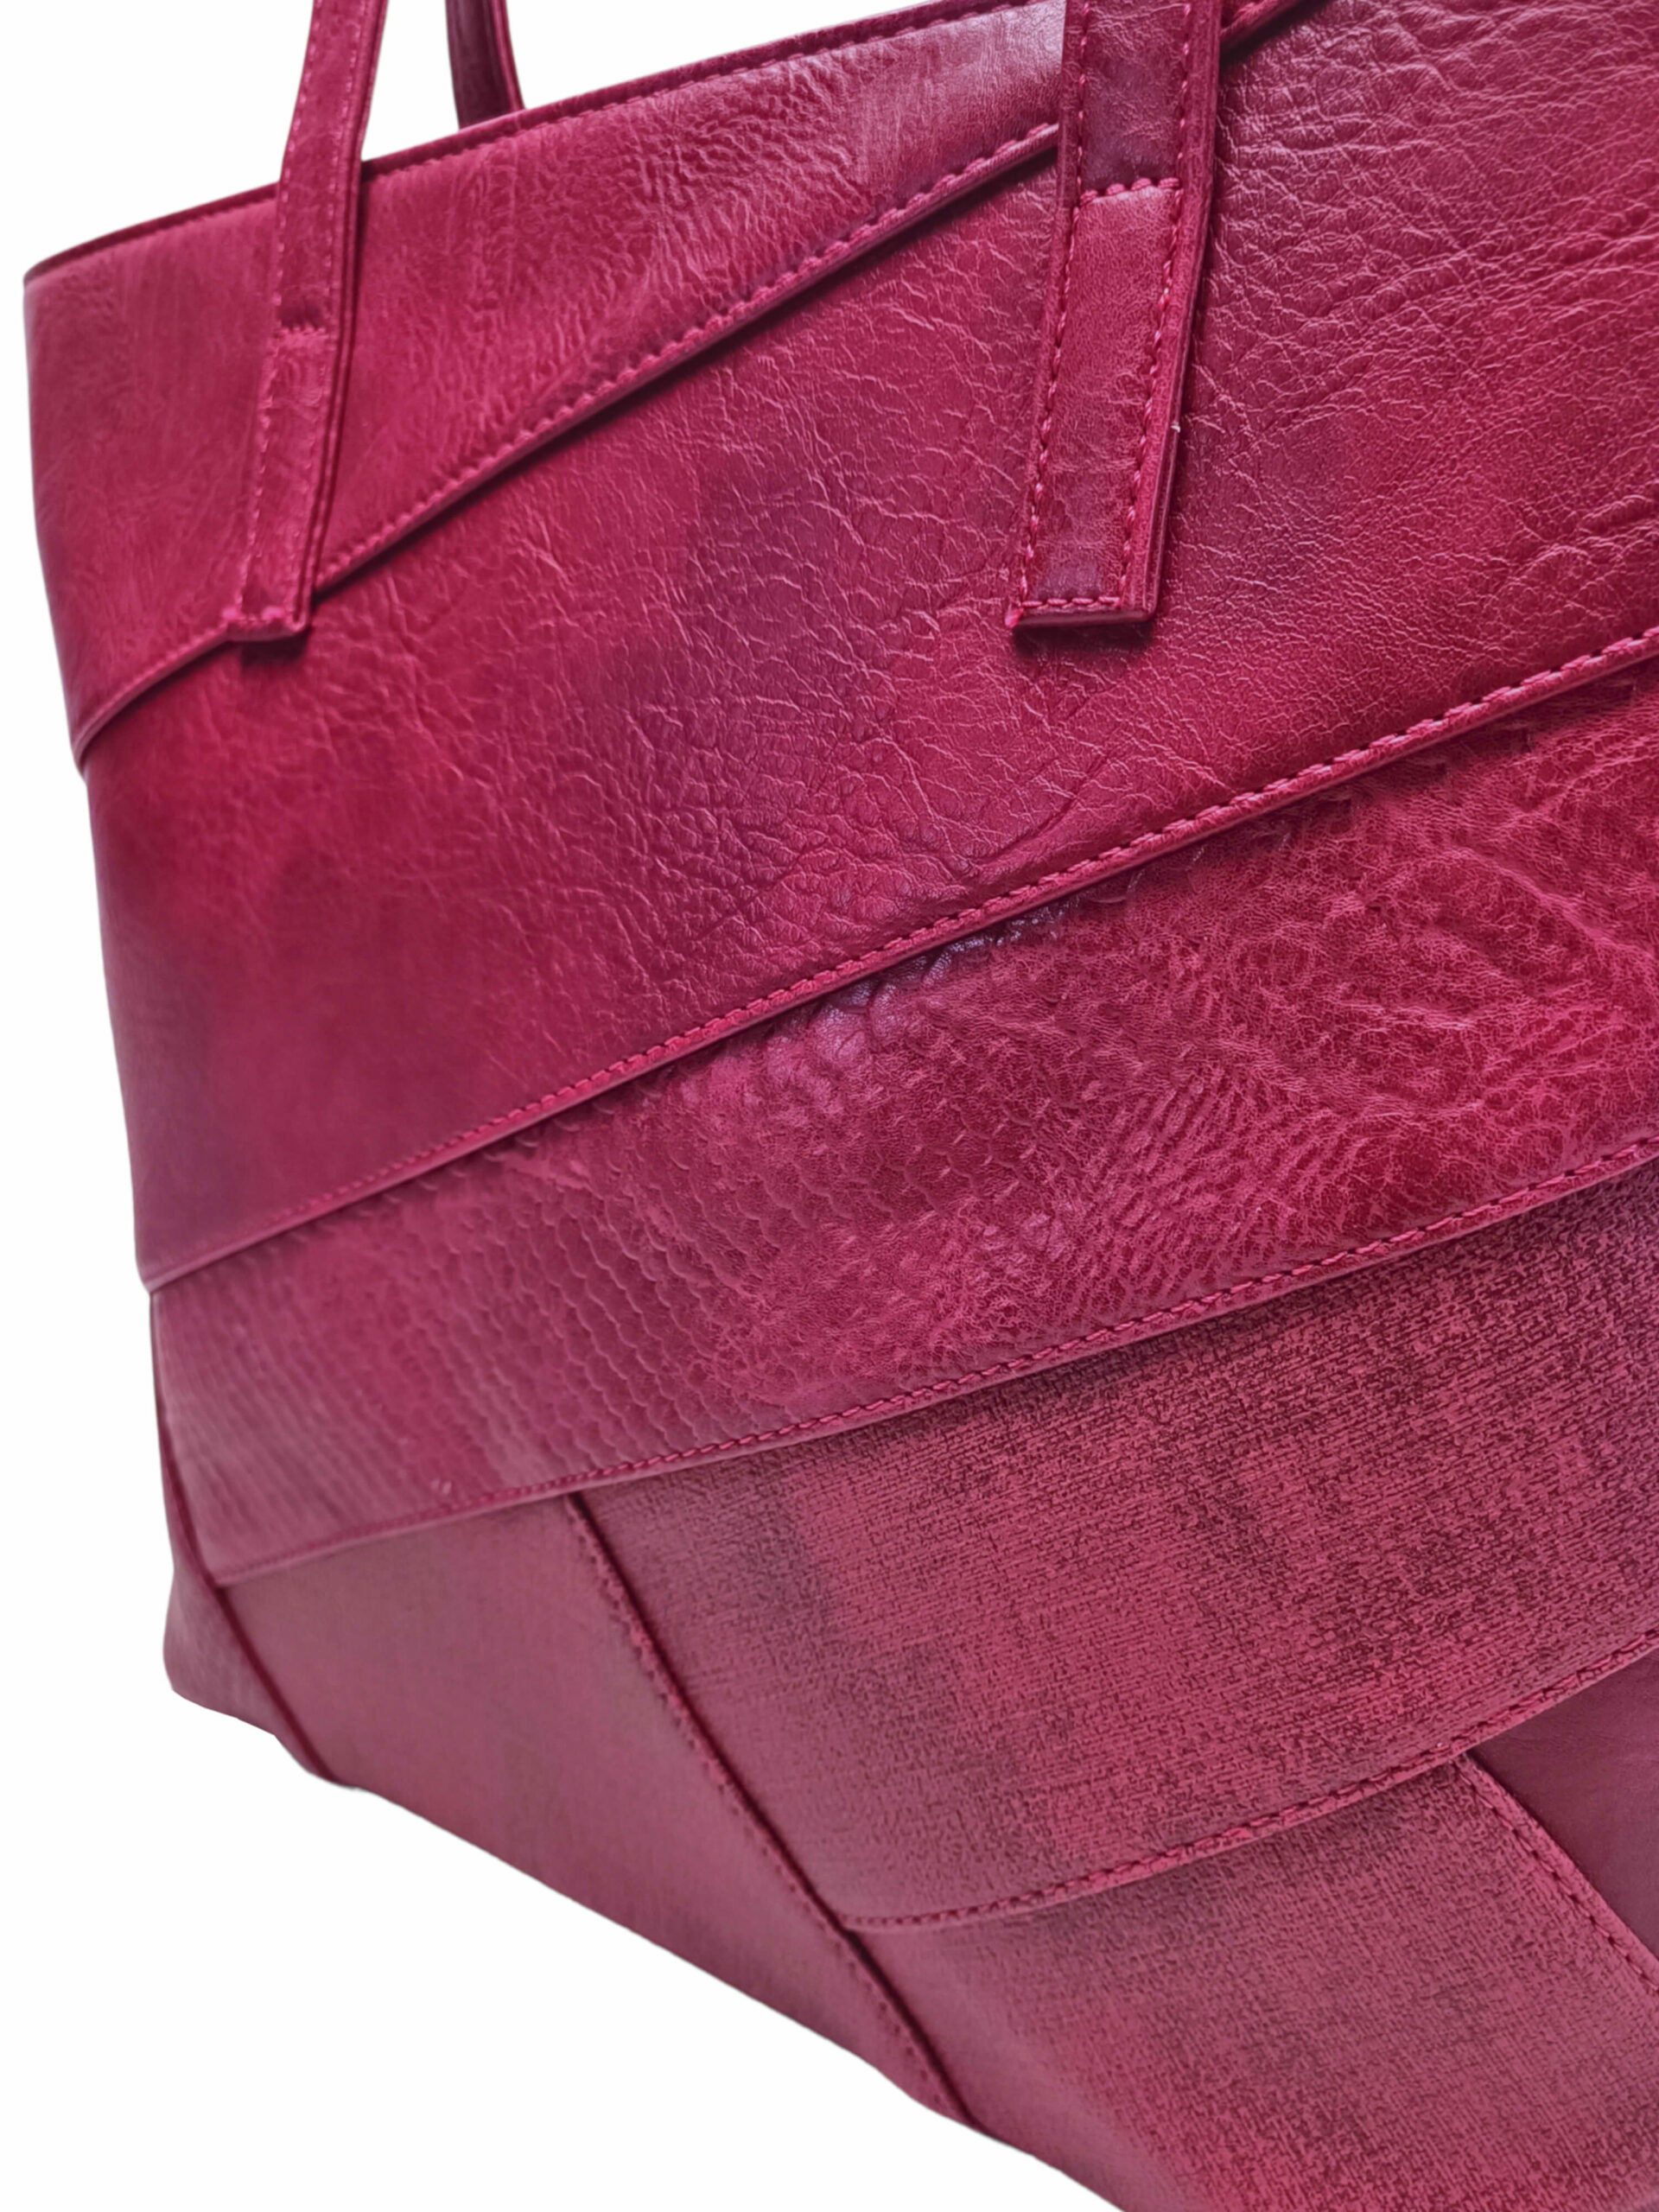 Vínová / bordó kabelka přes rameno s šikmými vzory, Tapple, H190030, detail dámské kabelky přes rameno